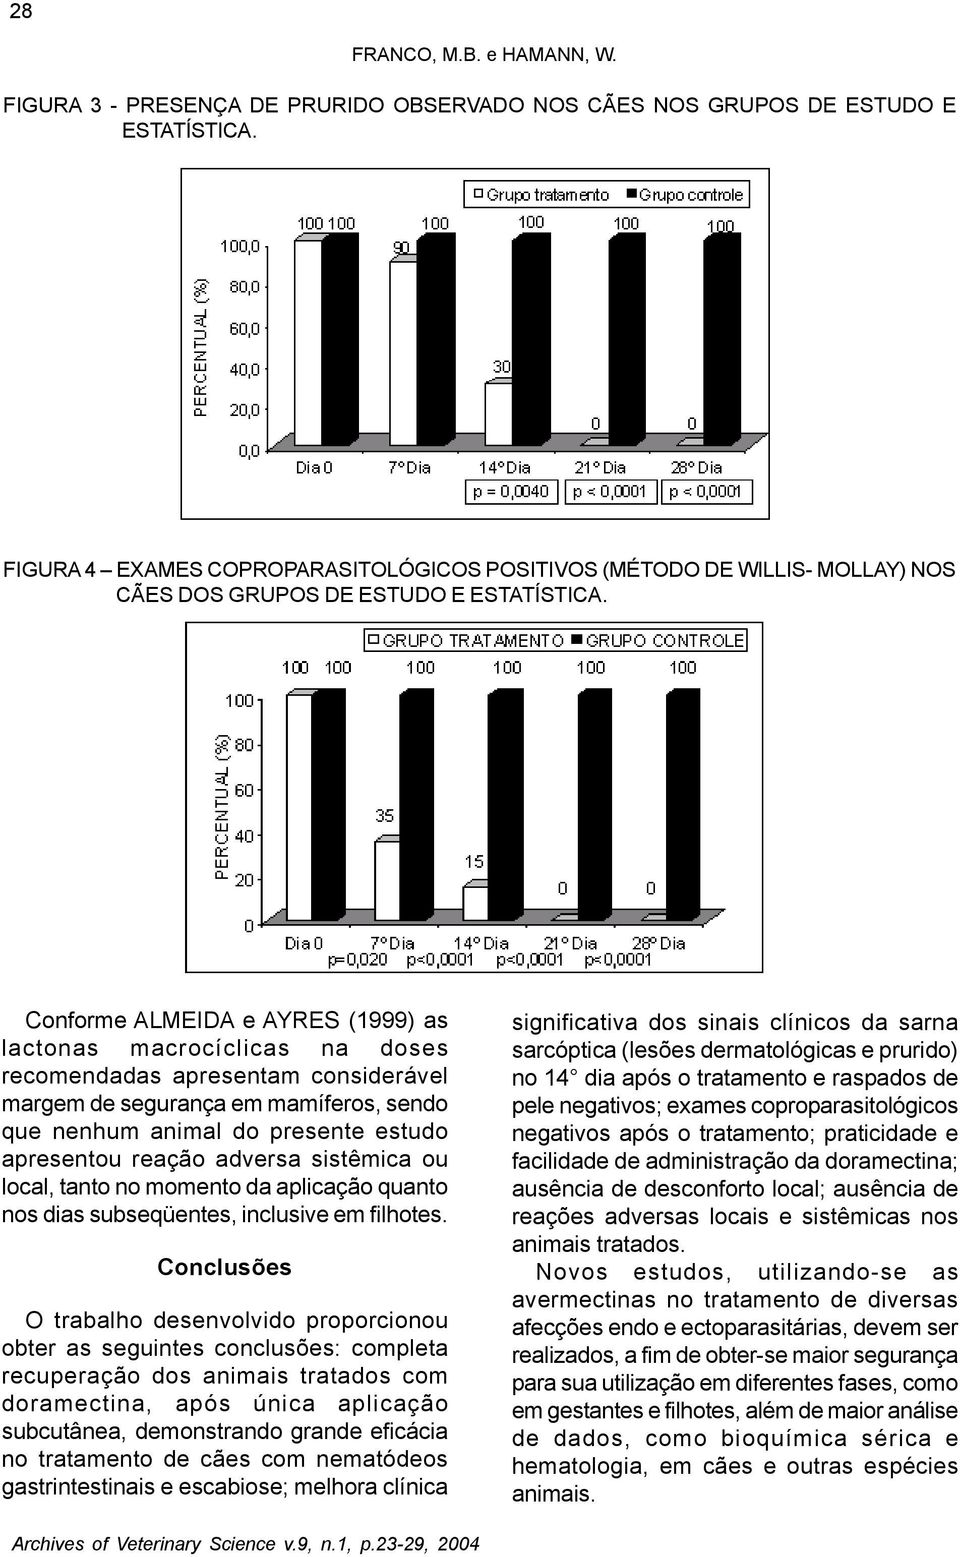 Conforme ALMEIDA e AYRES (1999) as lactonas macrocíclicas na doses recomendadas apresentam considerável margem de segurança em mamíferos, sendo que nenhum animal do presente estudo apresentou reação